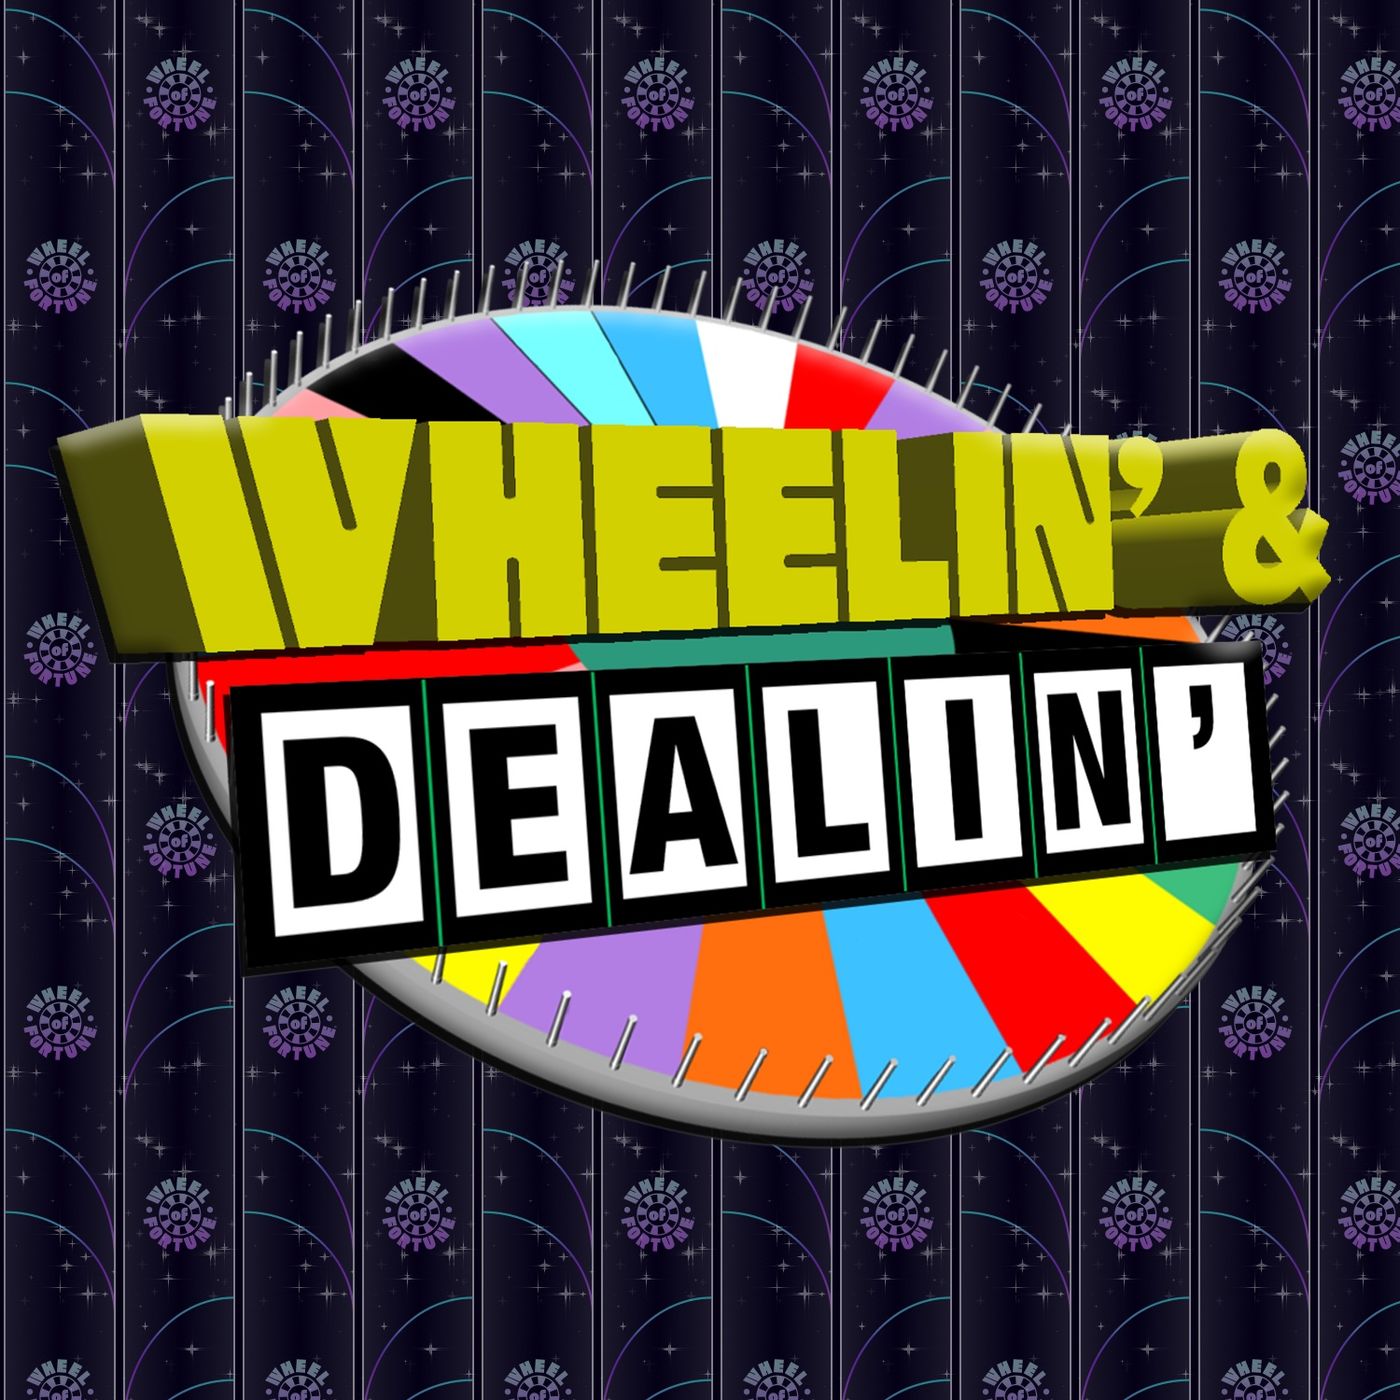 Wheelin' & Dealin'